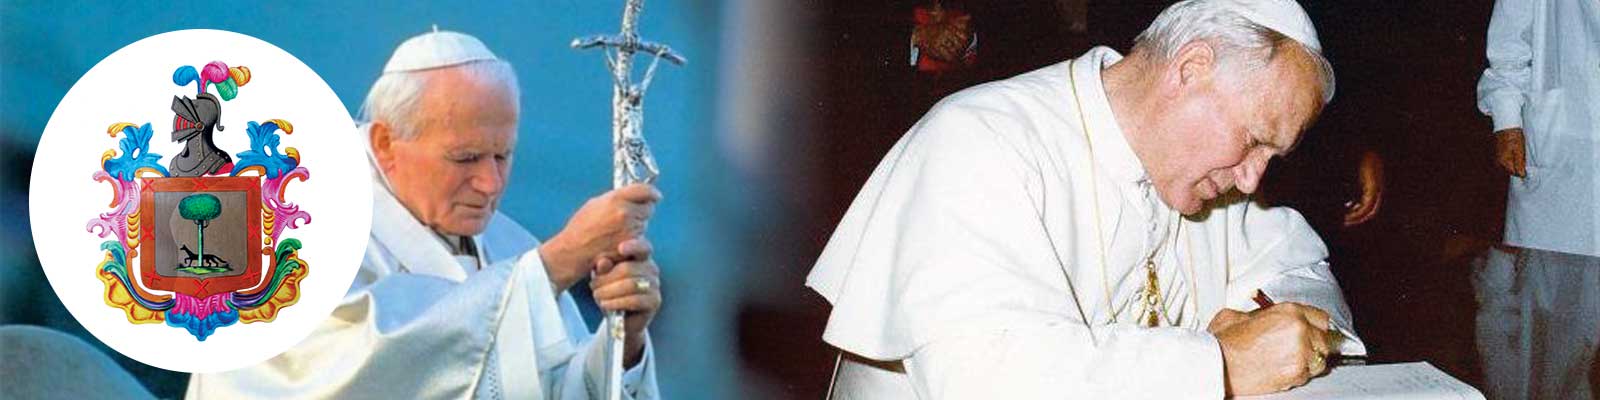 Lettera agli artisti Giovanni Paolo II